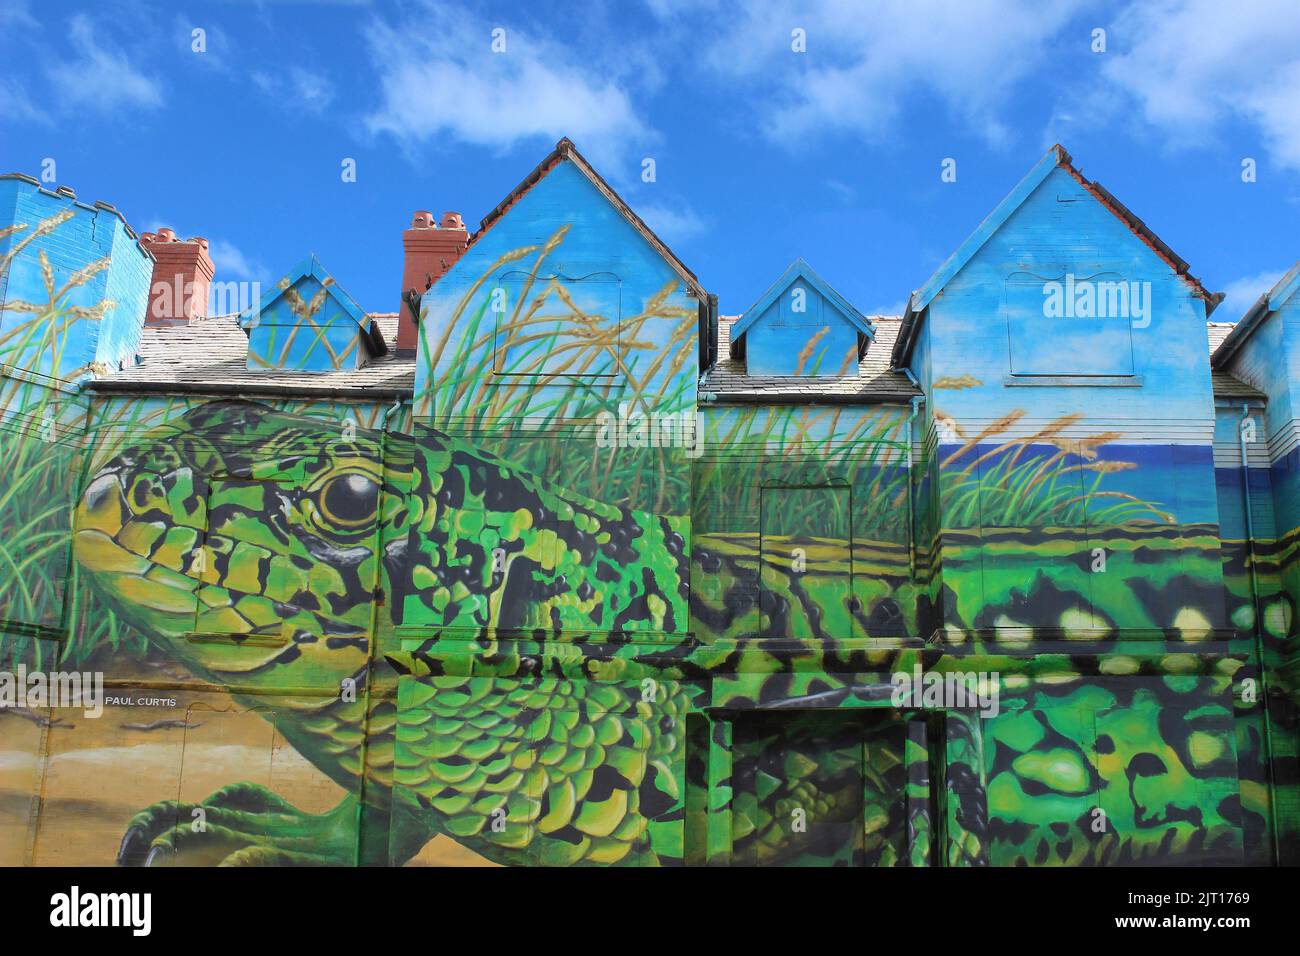 Arte del lagarto de arena por Paul Curtis - Ainsdale, Merseyside Foto de stock